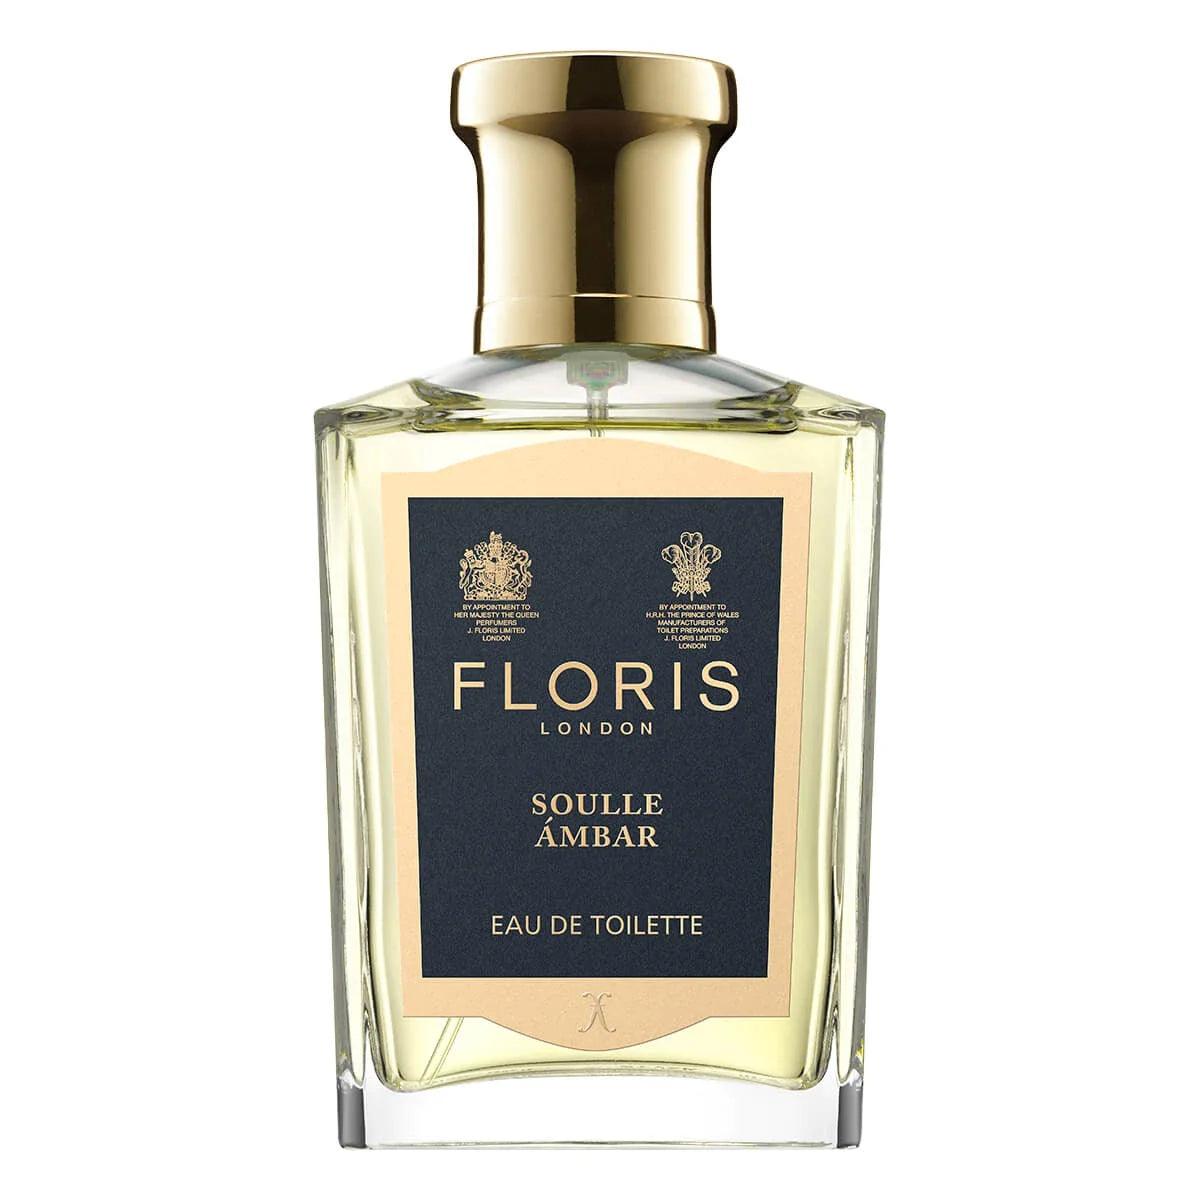 Floris London Floris Soulle Ambar, Eau de Toilette, 50 ml | Parfyme | Floris London | JK SHOP | JK Barber og herre frisør | Lavepriser | Best